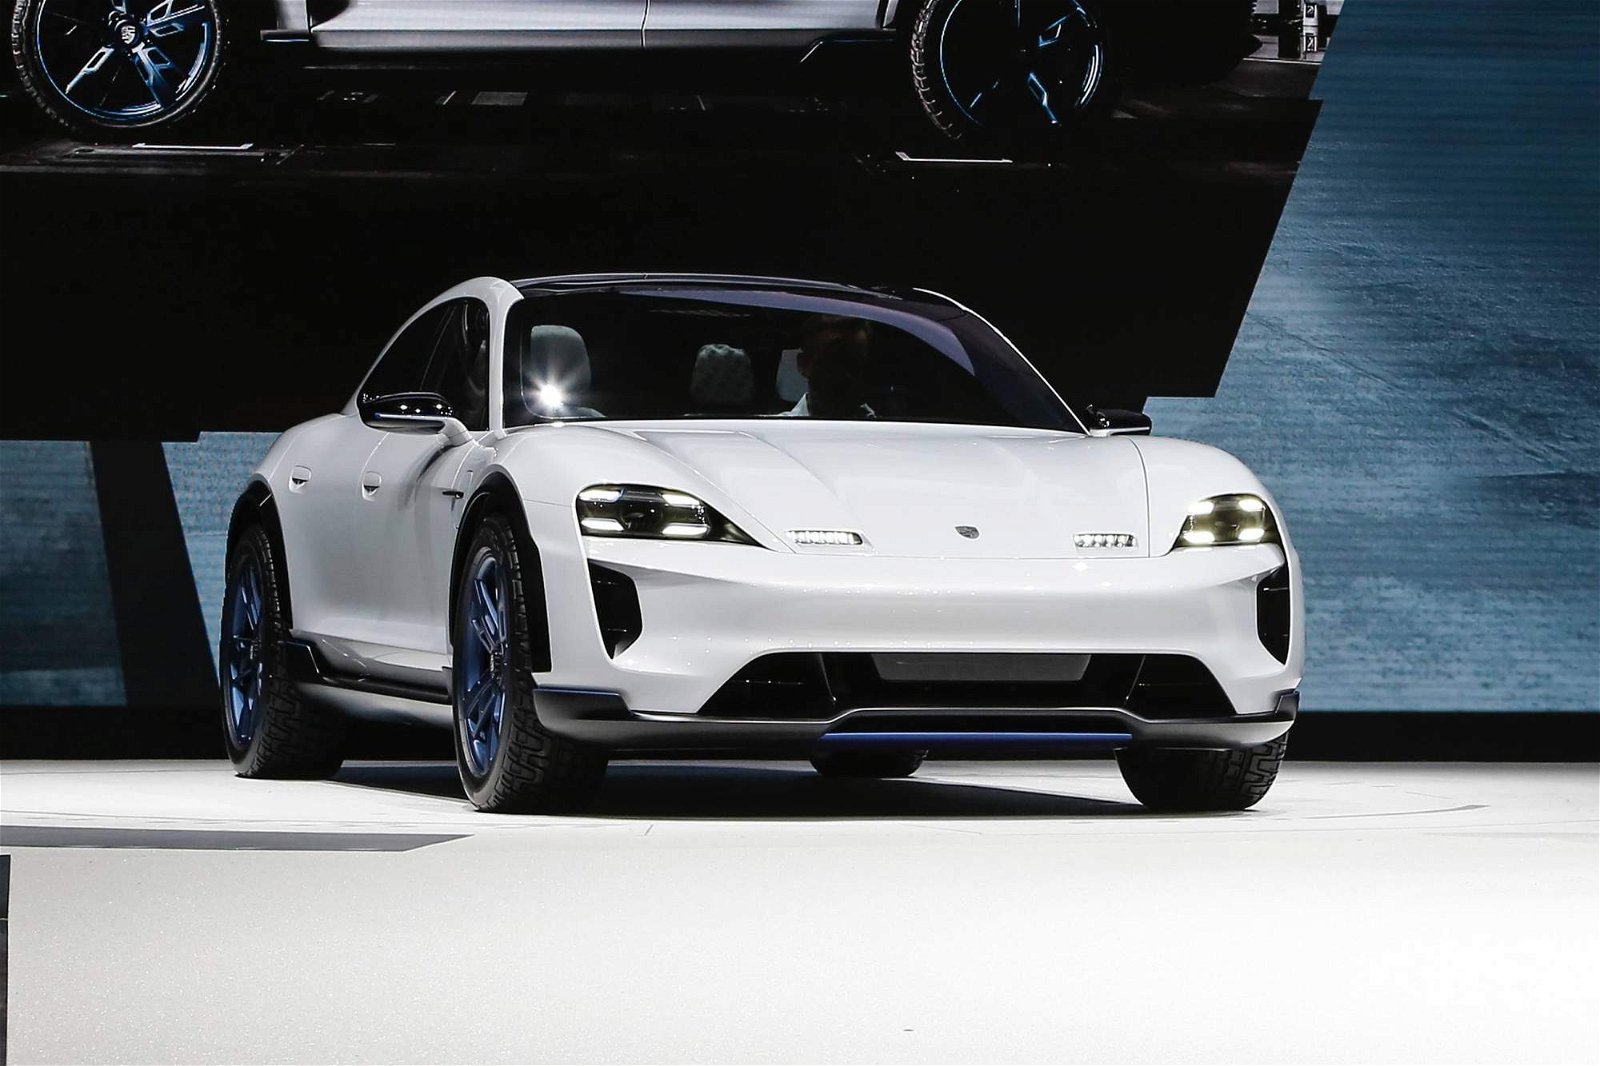 Porsche-Mission-E-Cross-Turismo-Concept-at-Geneva-Motor-Show-3